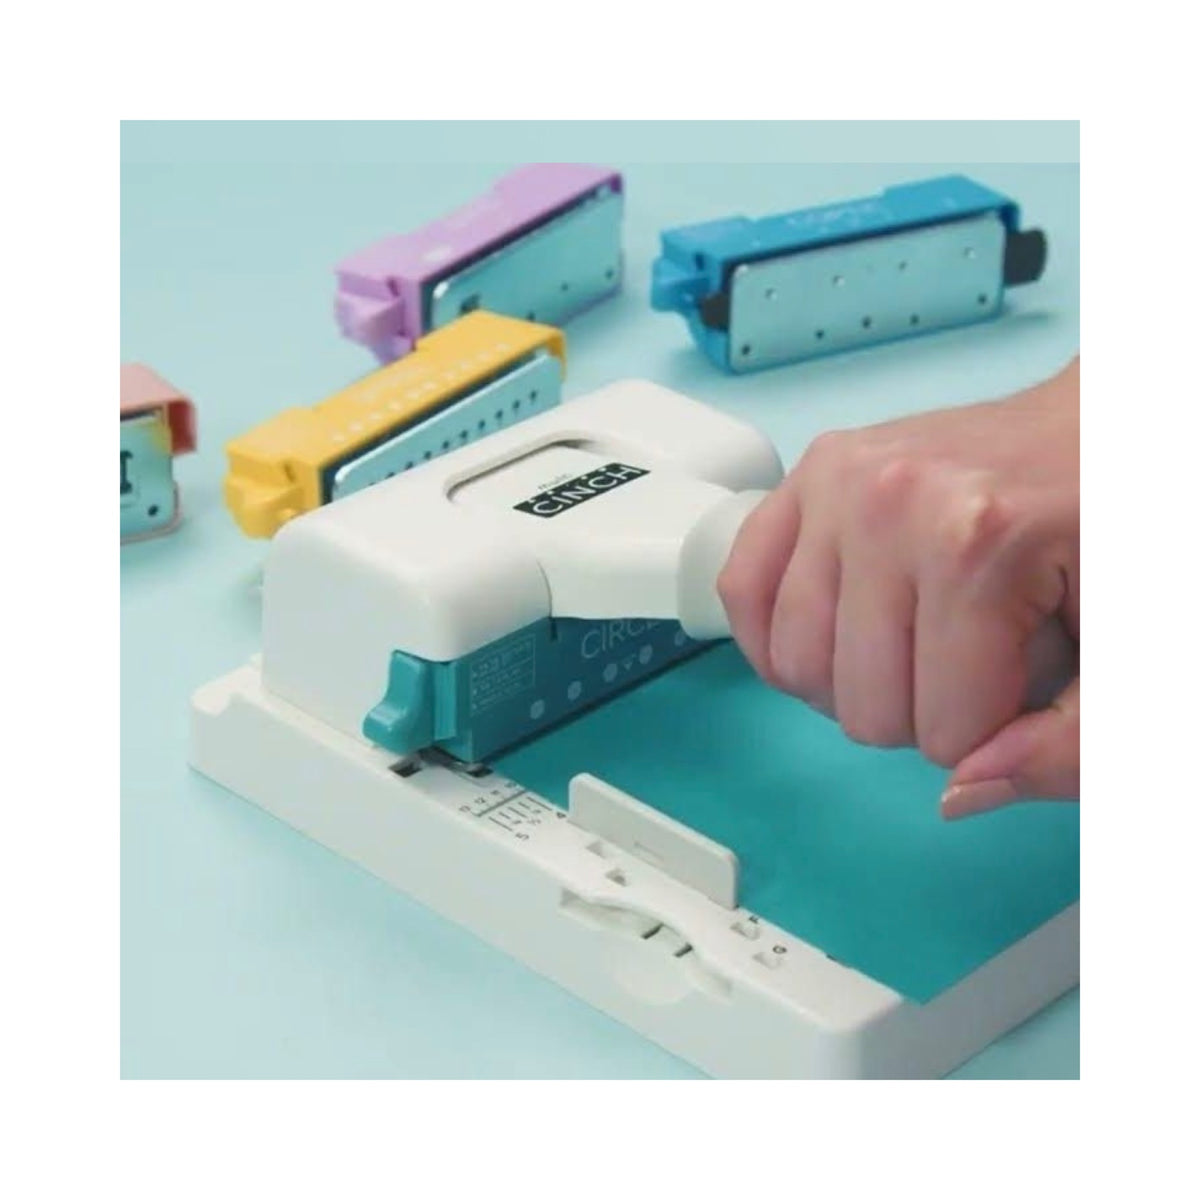 Mini cinch máquina encuadernadora We R Makers - Cáceres Crafts